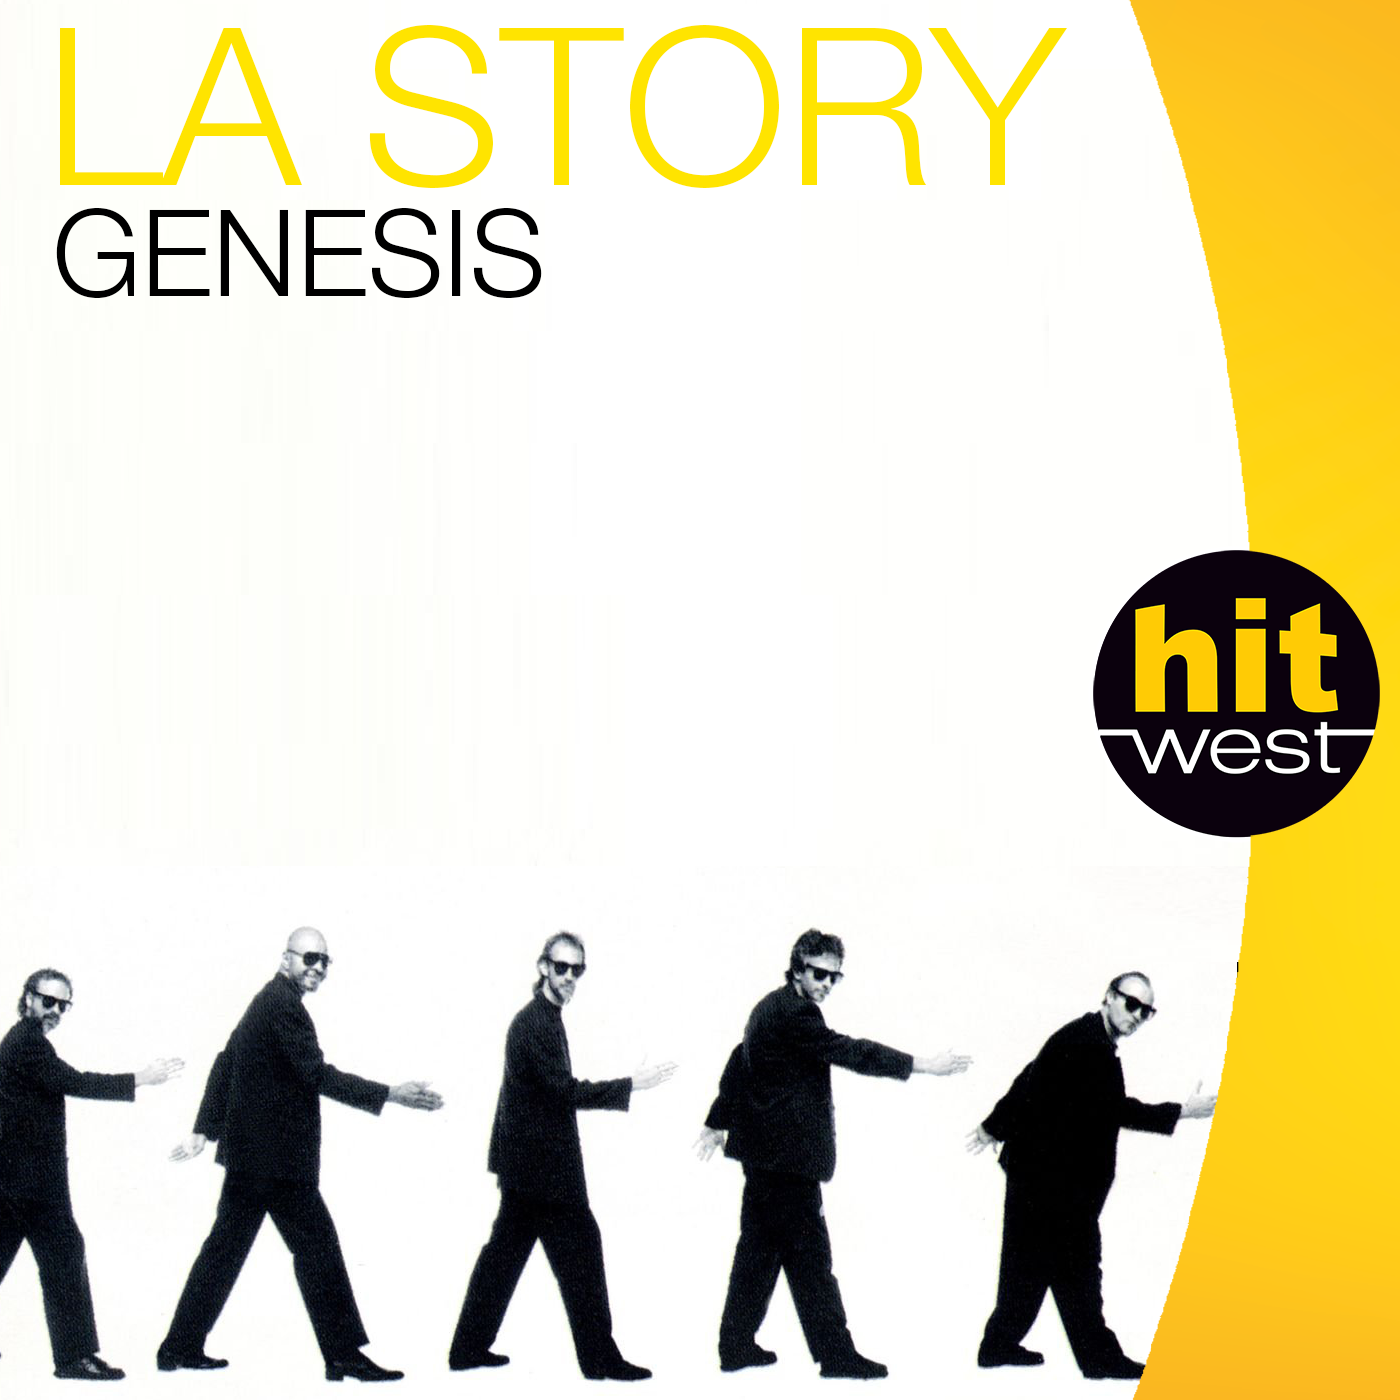 HW-story-genesis.png (483 KB)